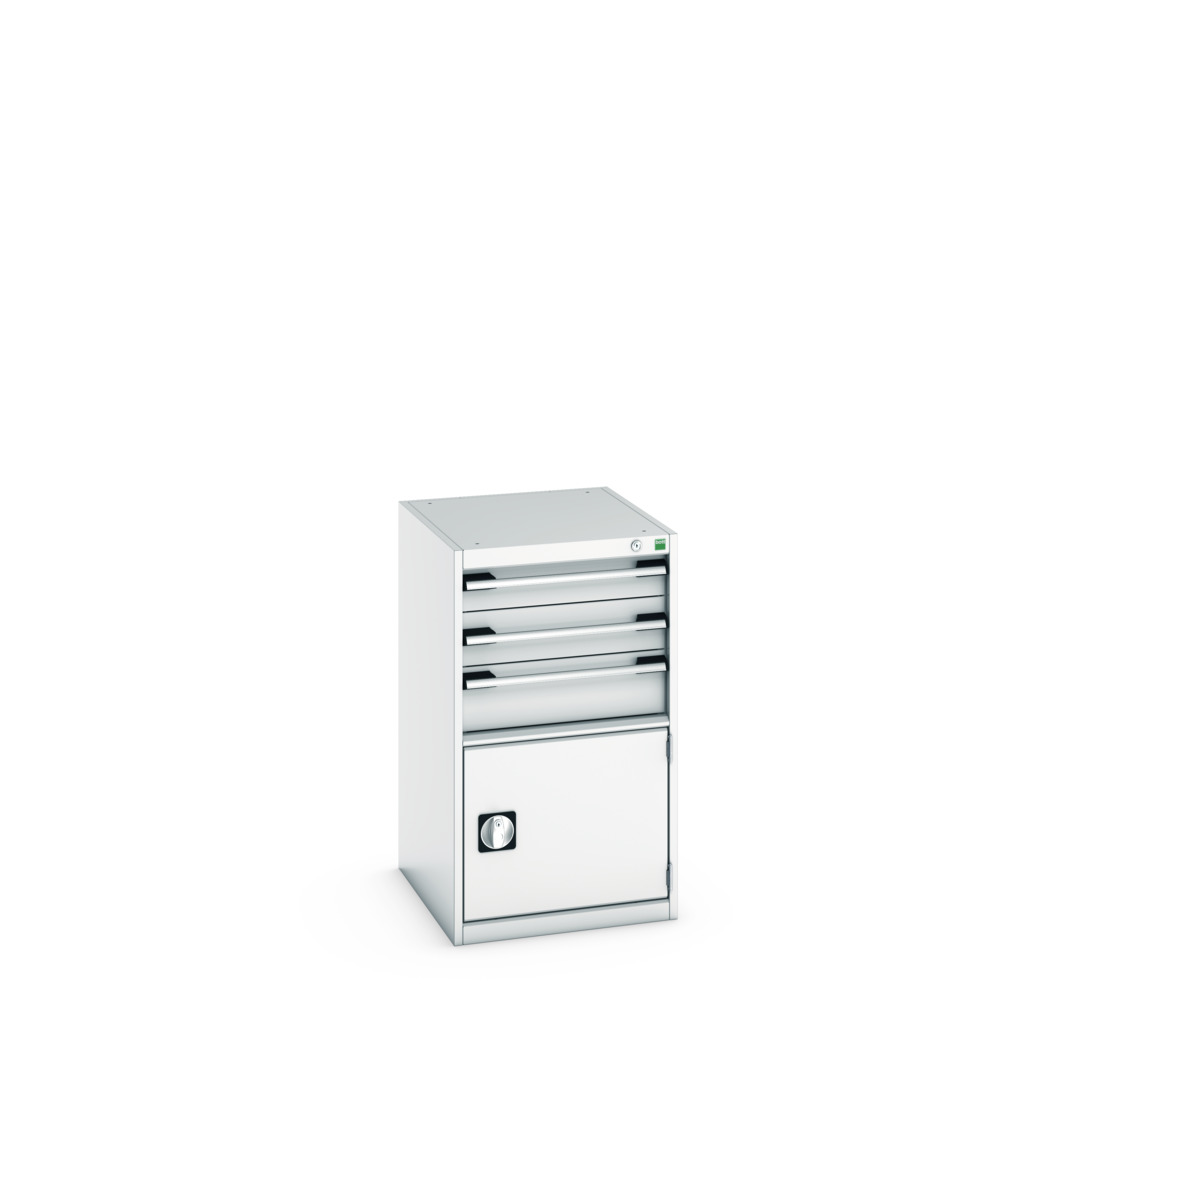 40018043.16V - cubio armoire à tiroirs/porte SL-569-4.1